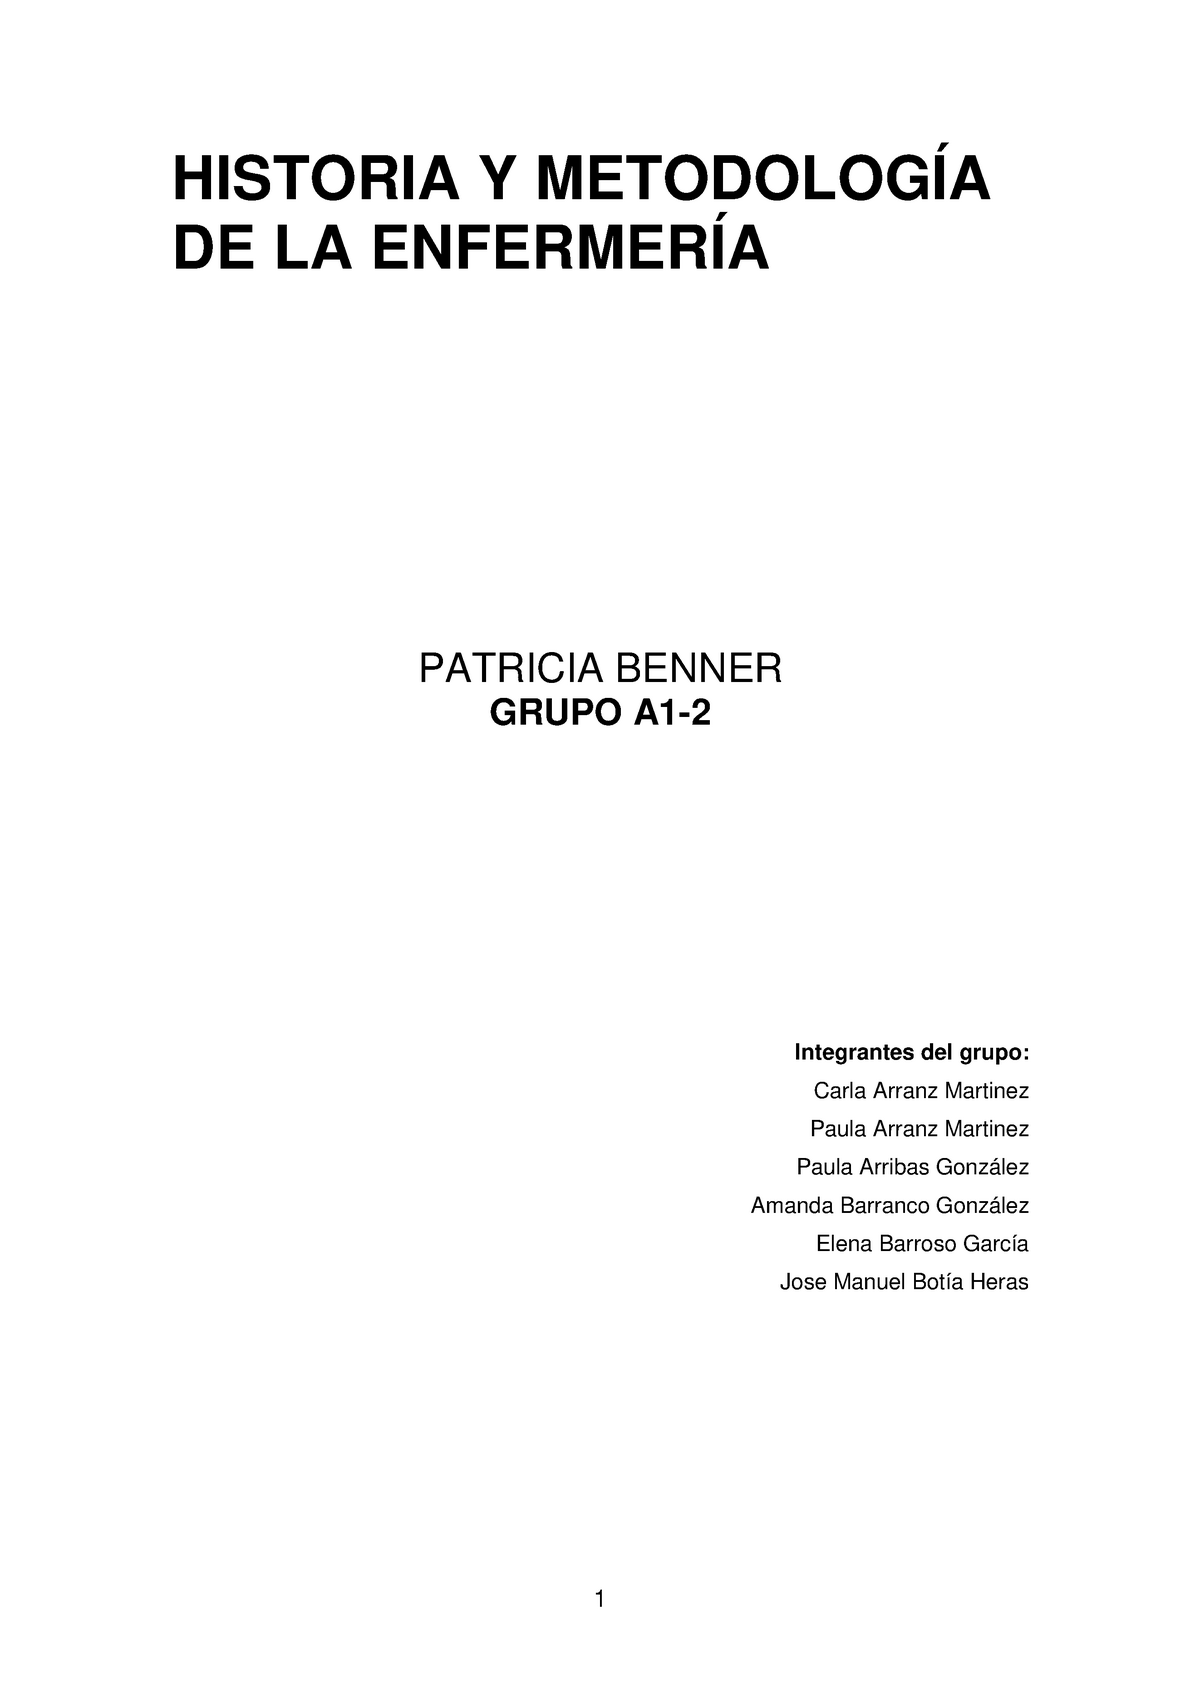  de Benner - HISTORIA Y METODOLOGÍA DE LA ENFERMERÍA PATRICIA  BENNER GRUPO A1- - Studocu